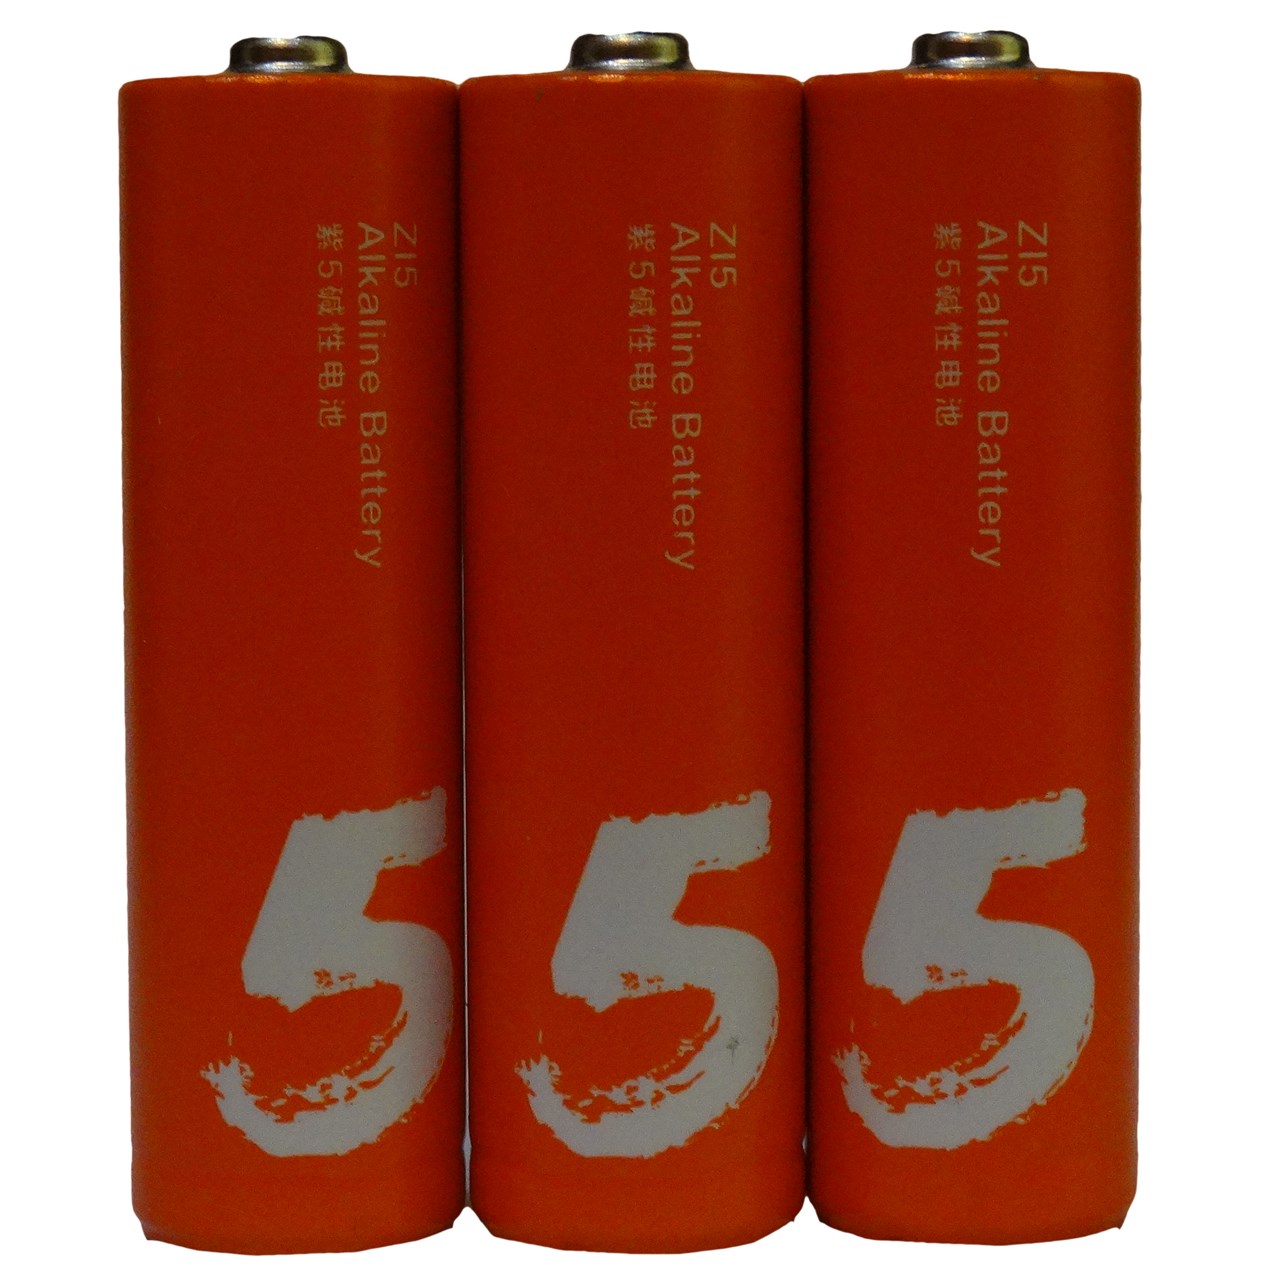 باتری قلمی آلکالین شیاومی مدل Z15 بسته 3 عددی